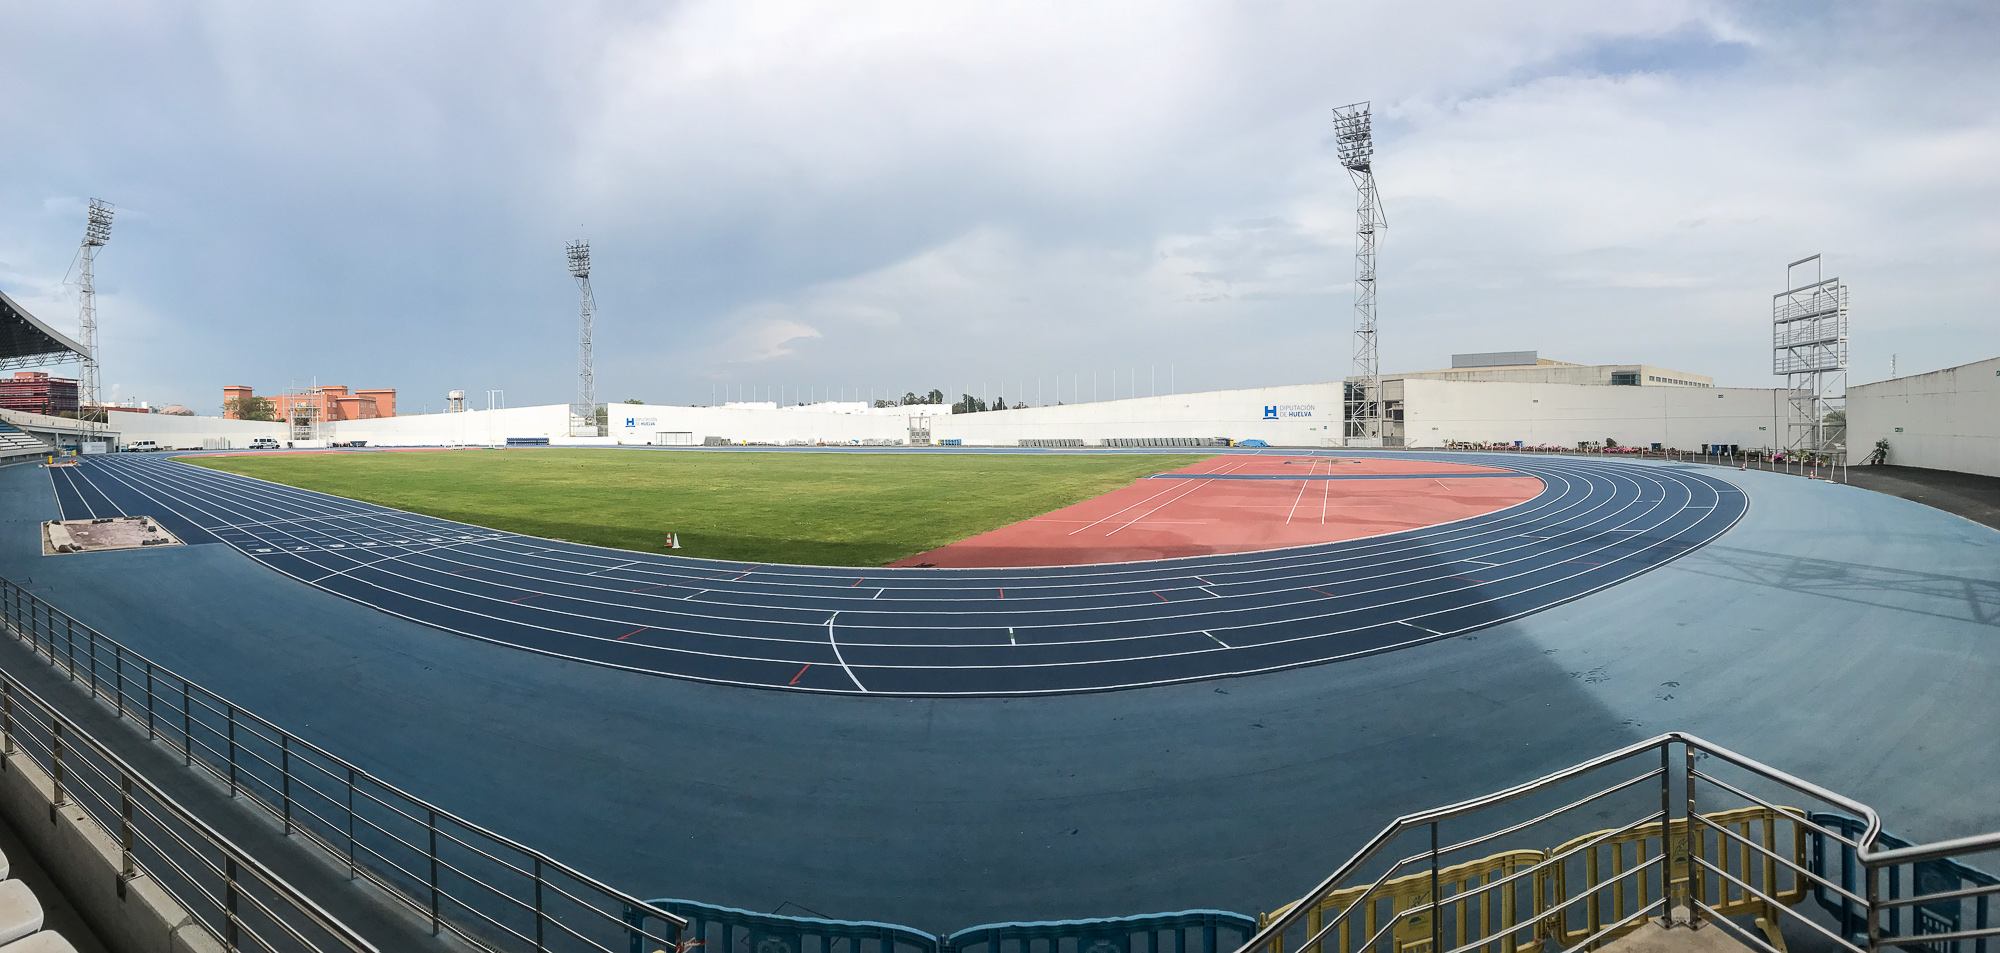 El Estadio de Atletismo Emilio Martín acogerá “El Meeting Iberoamericano” el 3 de junio